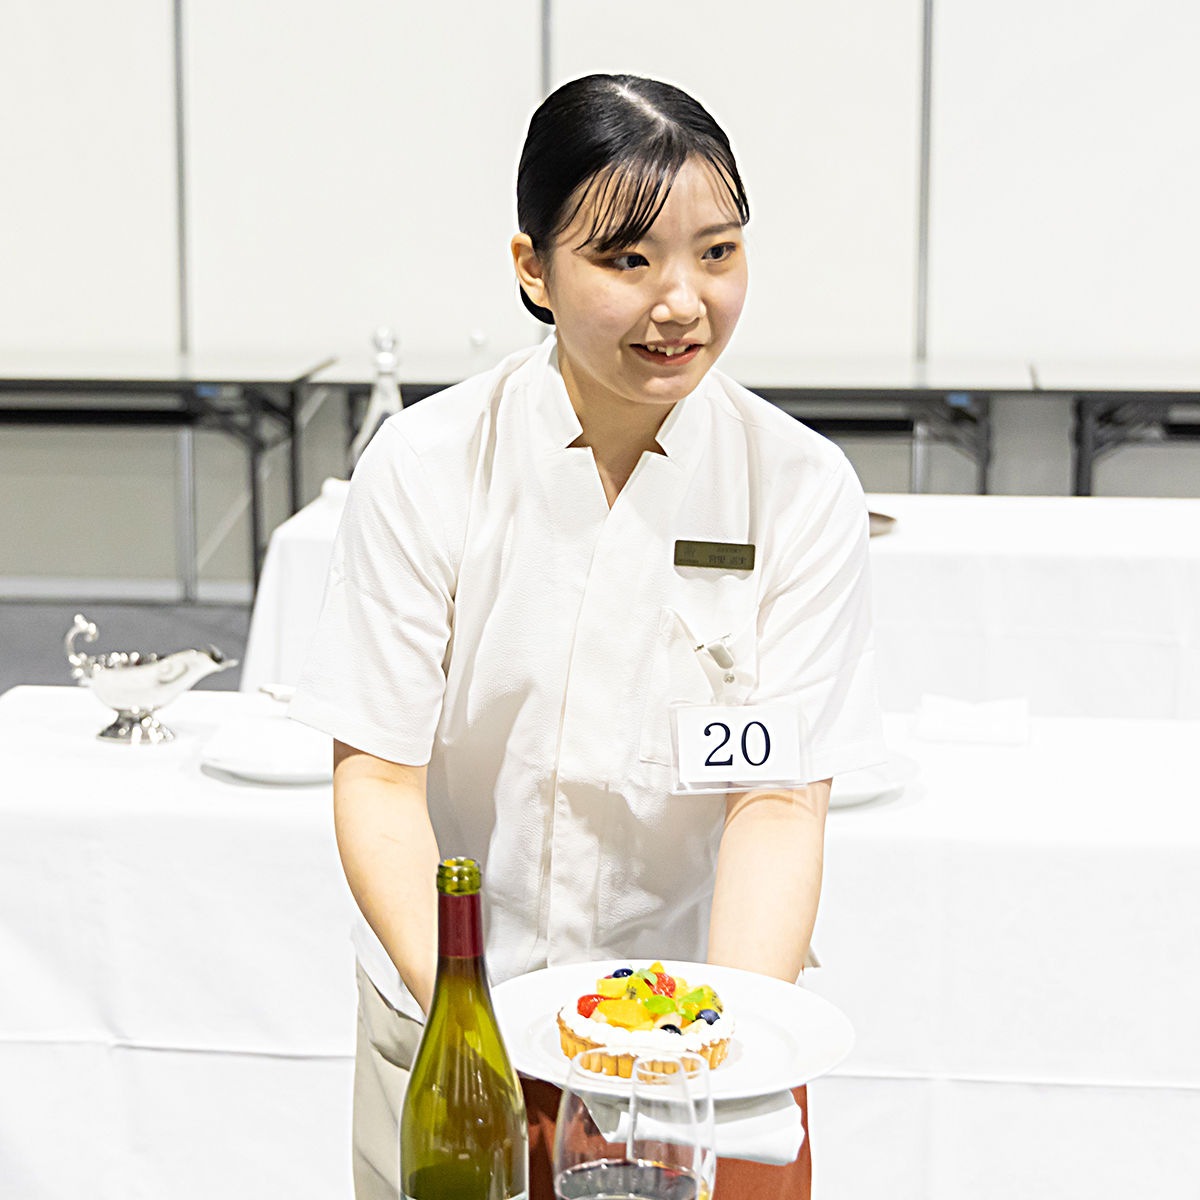 技能五輪全国大会「レストランサービス」職種！
ポイント②
衛生観念や笑顔、気づきなど其々のモジュールで五感をフル活用し、世界の舞台に立ちましょう！
#WorldSkills #WorldSkillsJapan #技能五輪全国大会 #NationalSkills #レストランサービス #RestaurantService